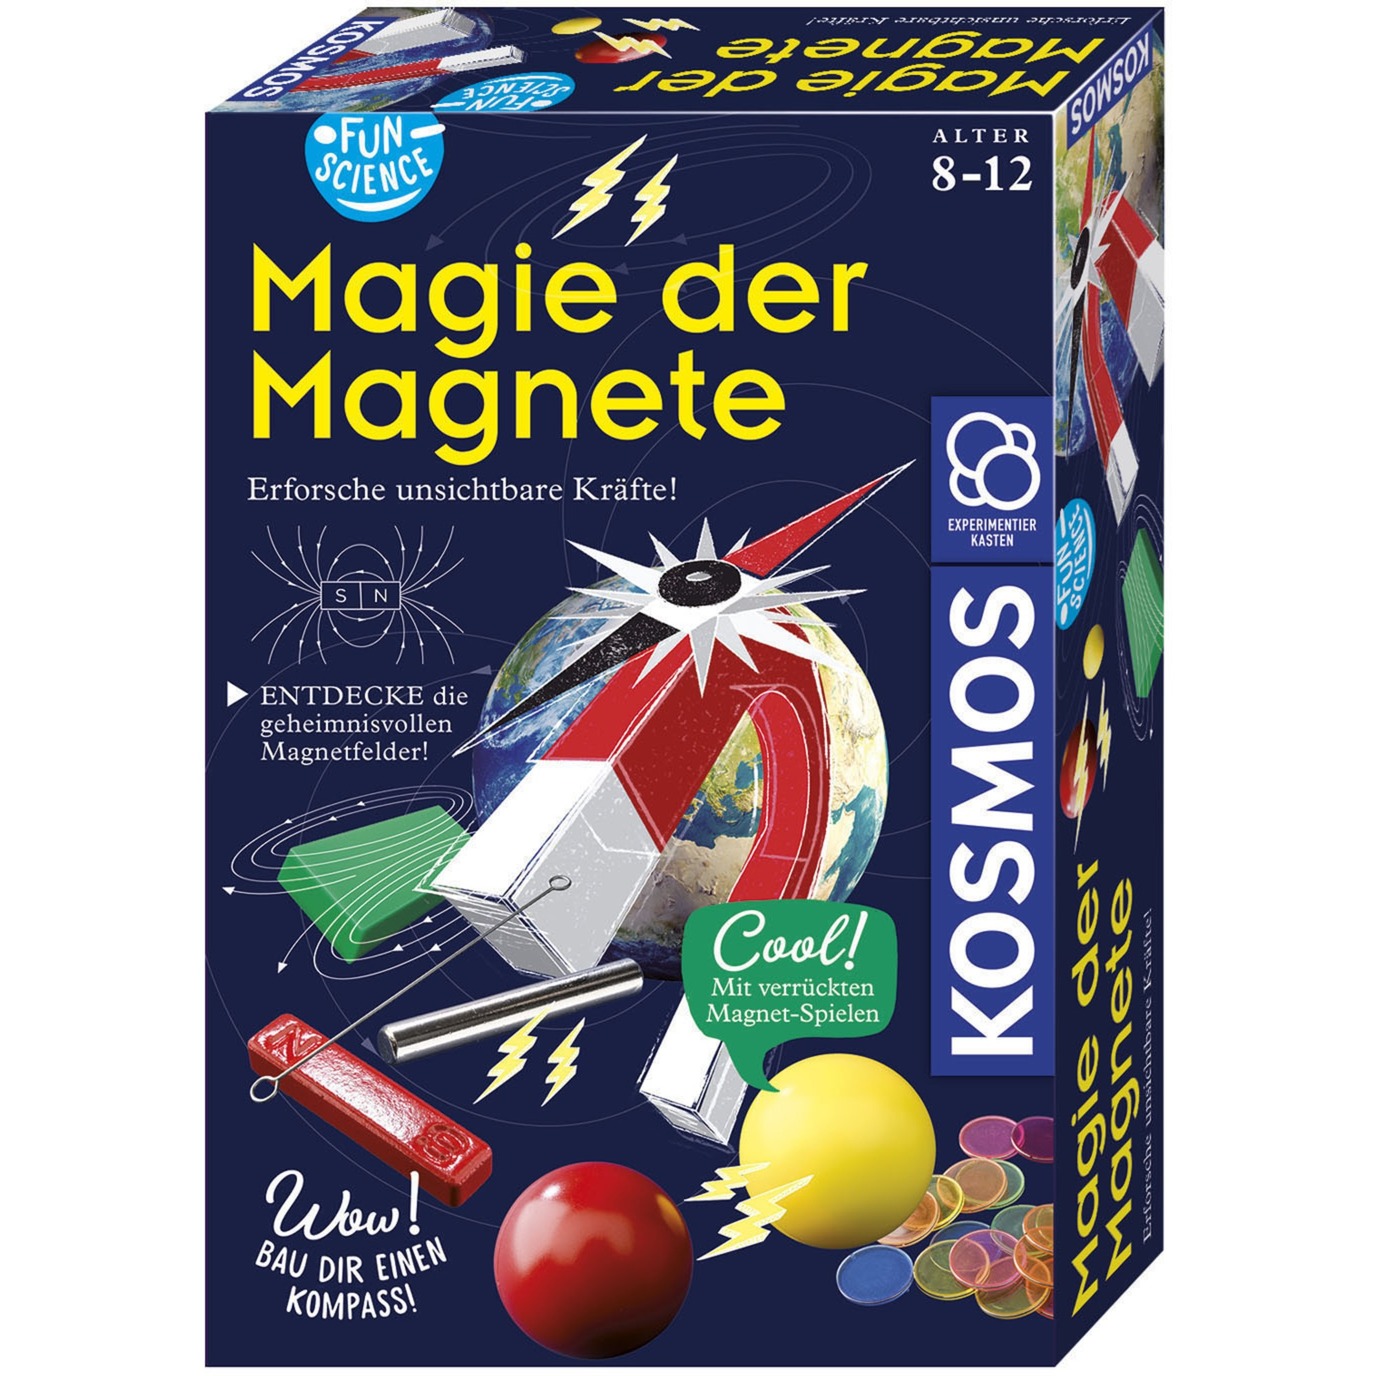 Fun Science Magie der Magnete, Experimentierkasten von Kosmos